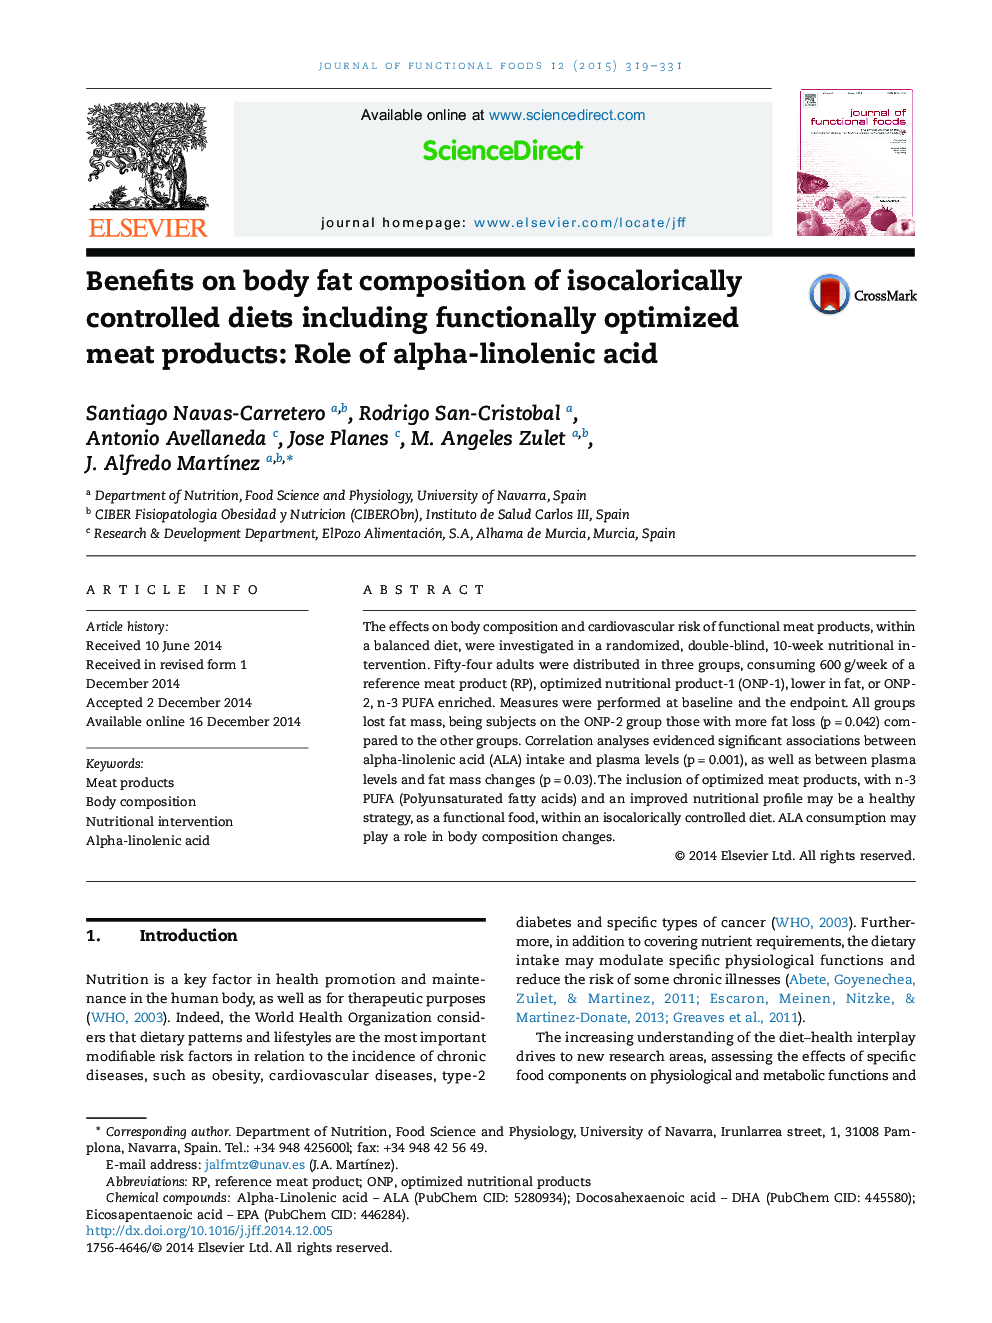 مزایای استفاده از ترکیبات چربی بدن از رژیم های کنترل شده از جمله مواد غذایی شامل محصولات گوشتی بهینه سازی شده عملکرد: نقش اسید آلفا لینولنیک 